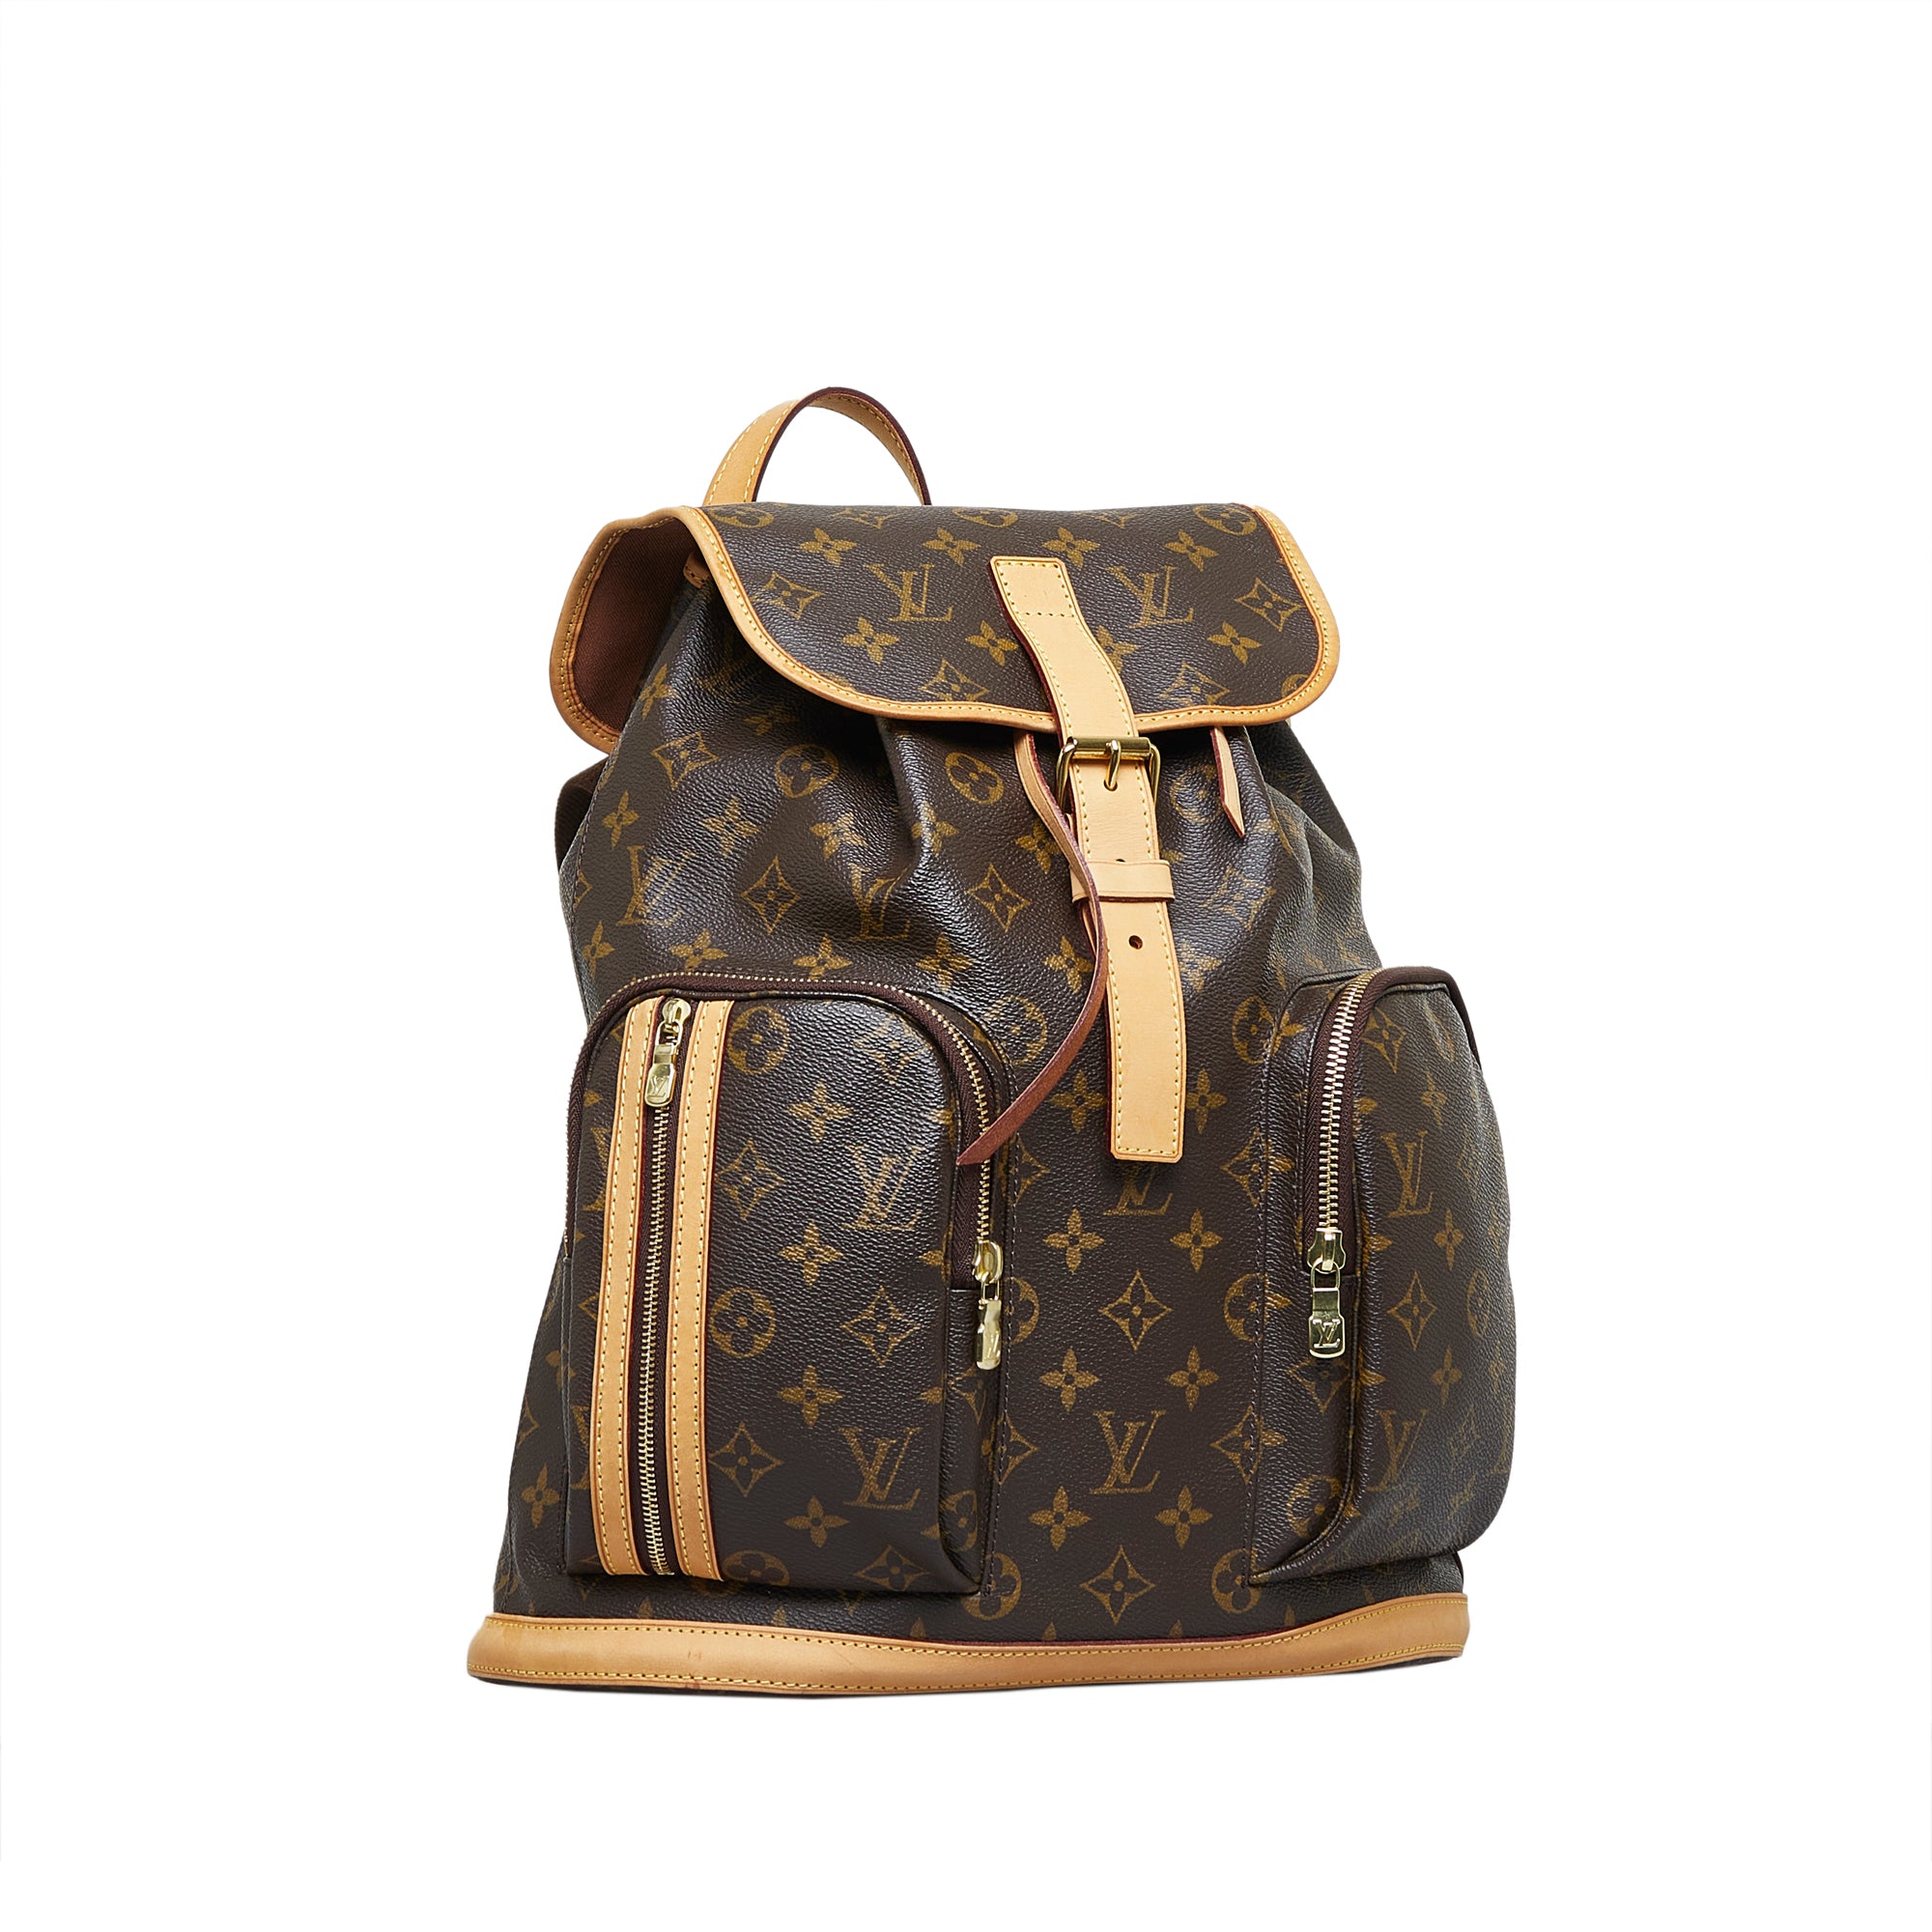 Louis Vuitton - Bosphore Backpack - Monogram - Pre-Loved